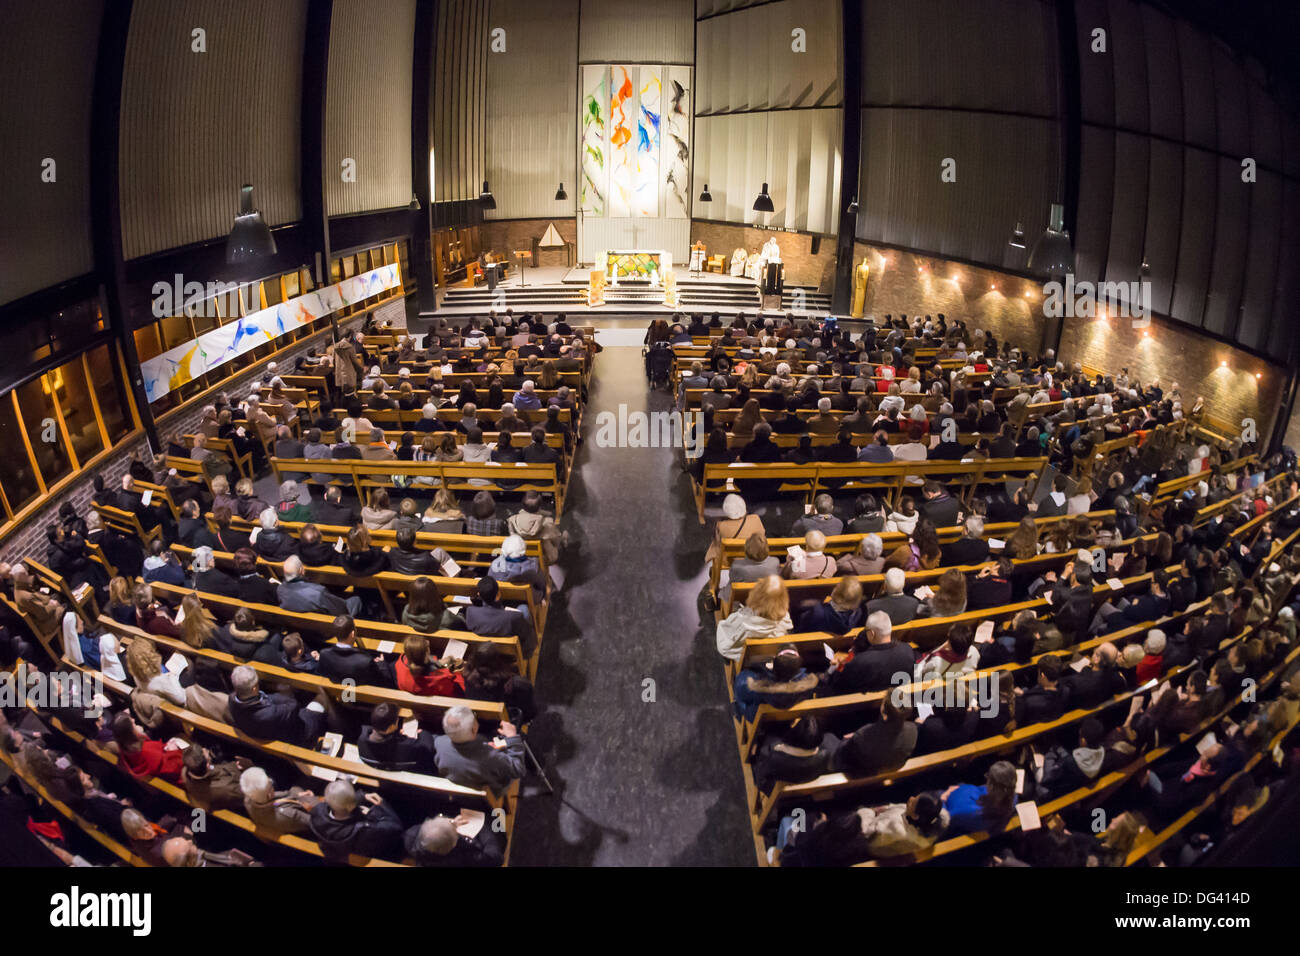 Catholic Mass, Paris, France, Europe Stock Photo